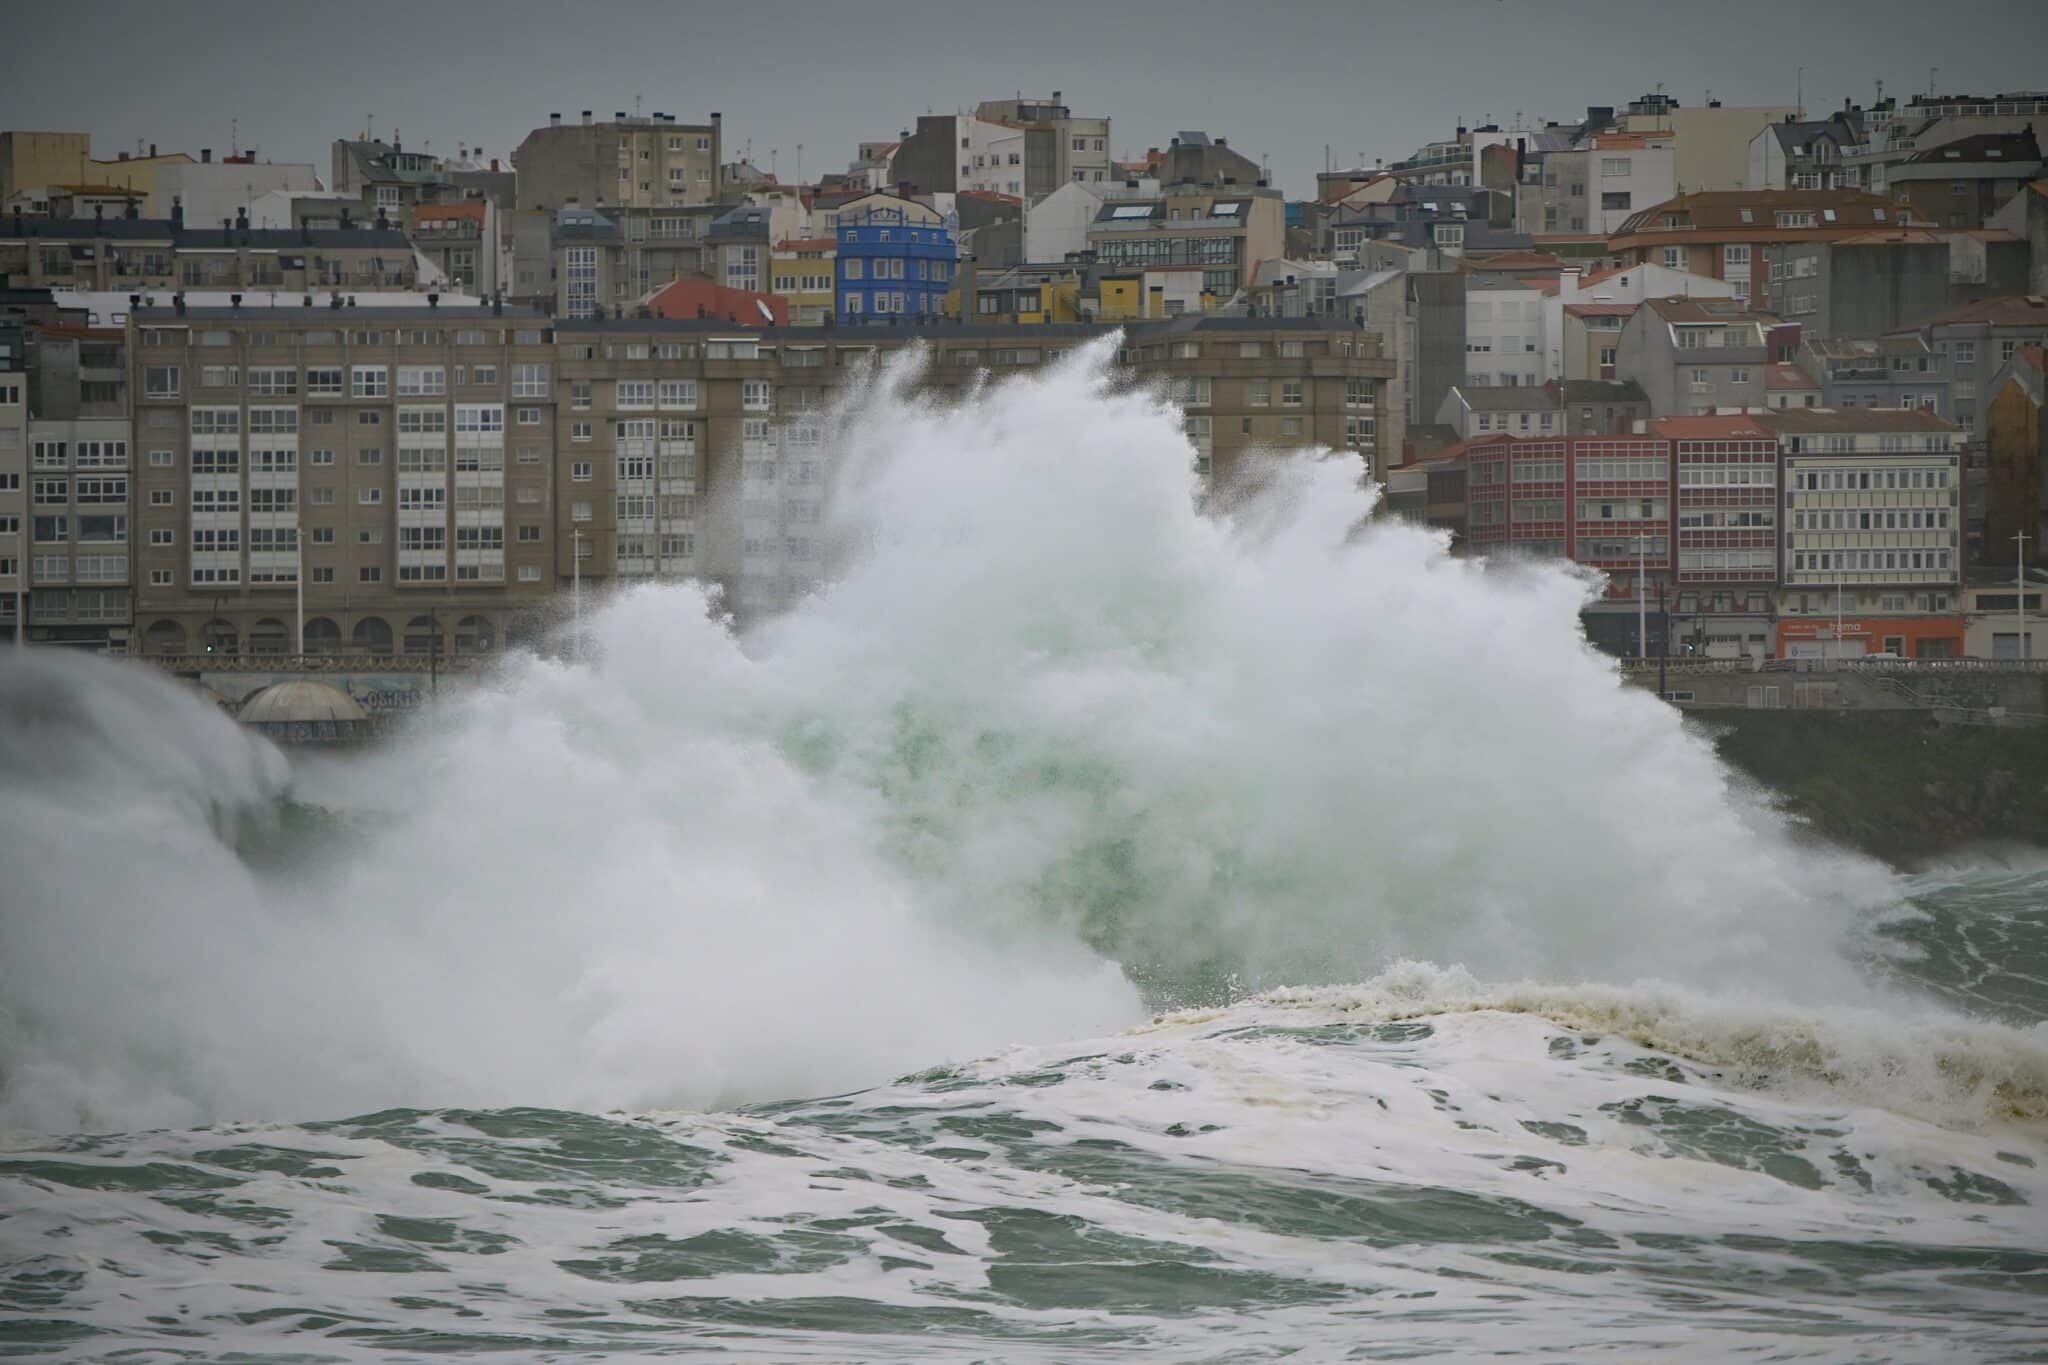 Lluvias y fuertes vientos que provocan grandes olas en La Coruña, Galicia, en alerta naranja